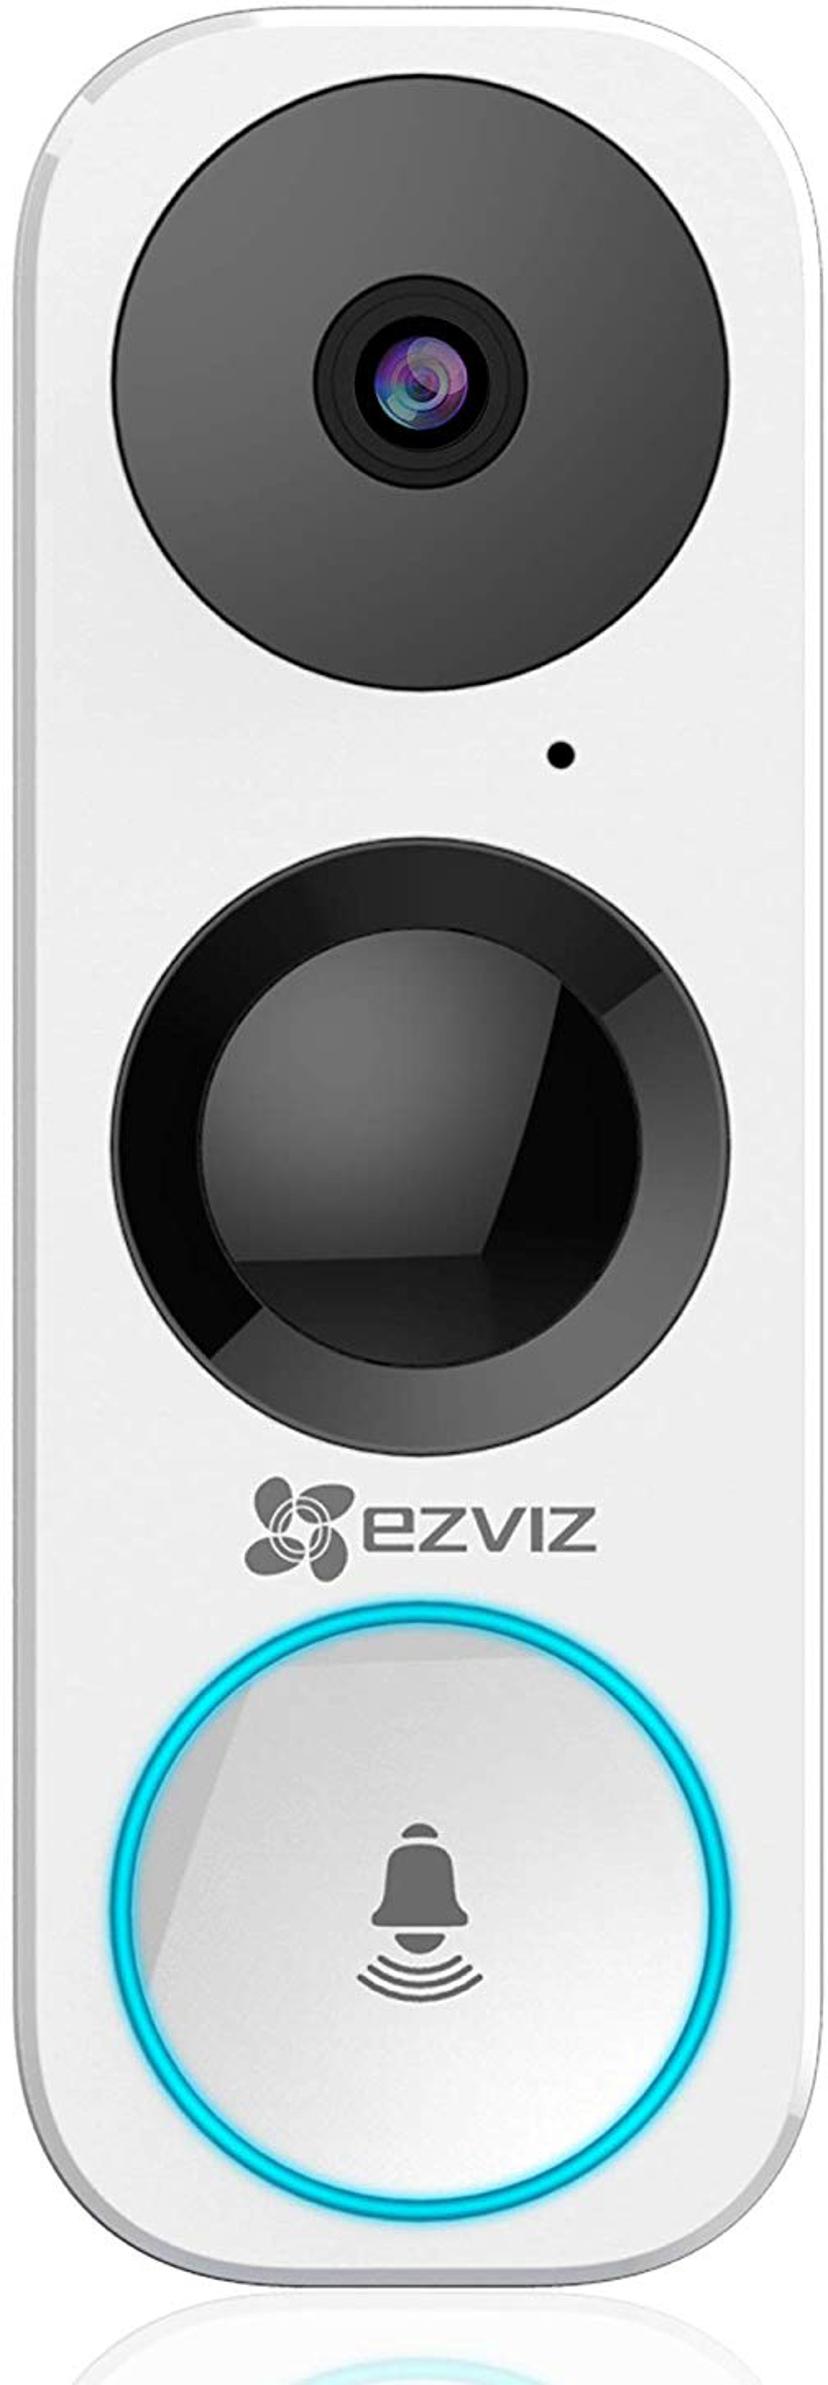 Ezviz DB2 Smart Video Doorbell